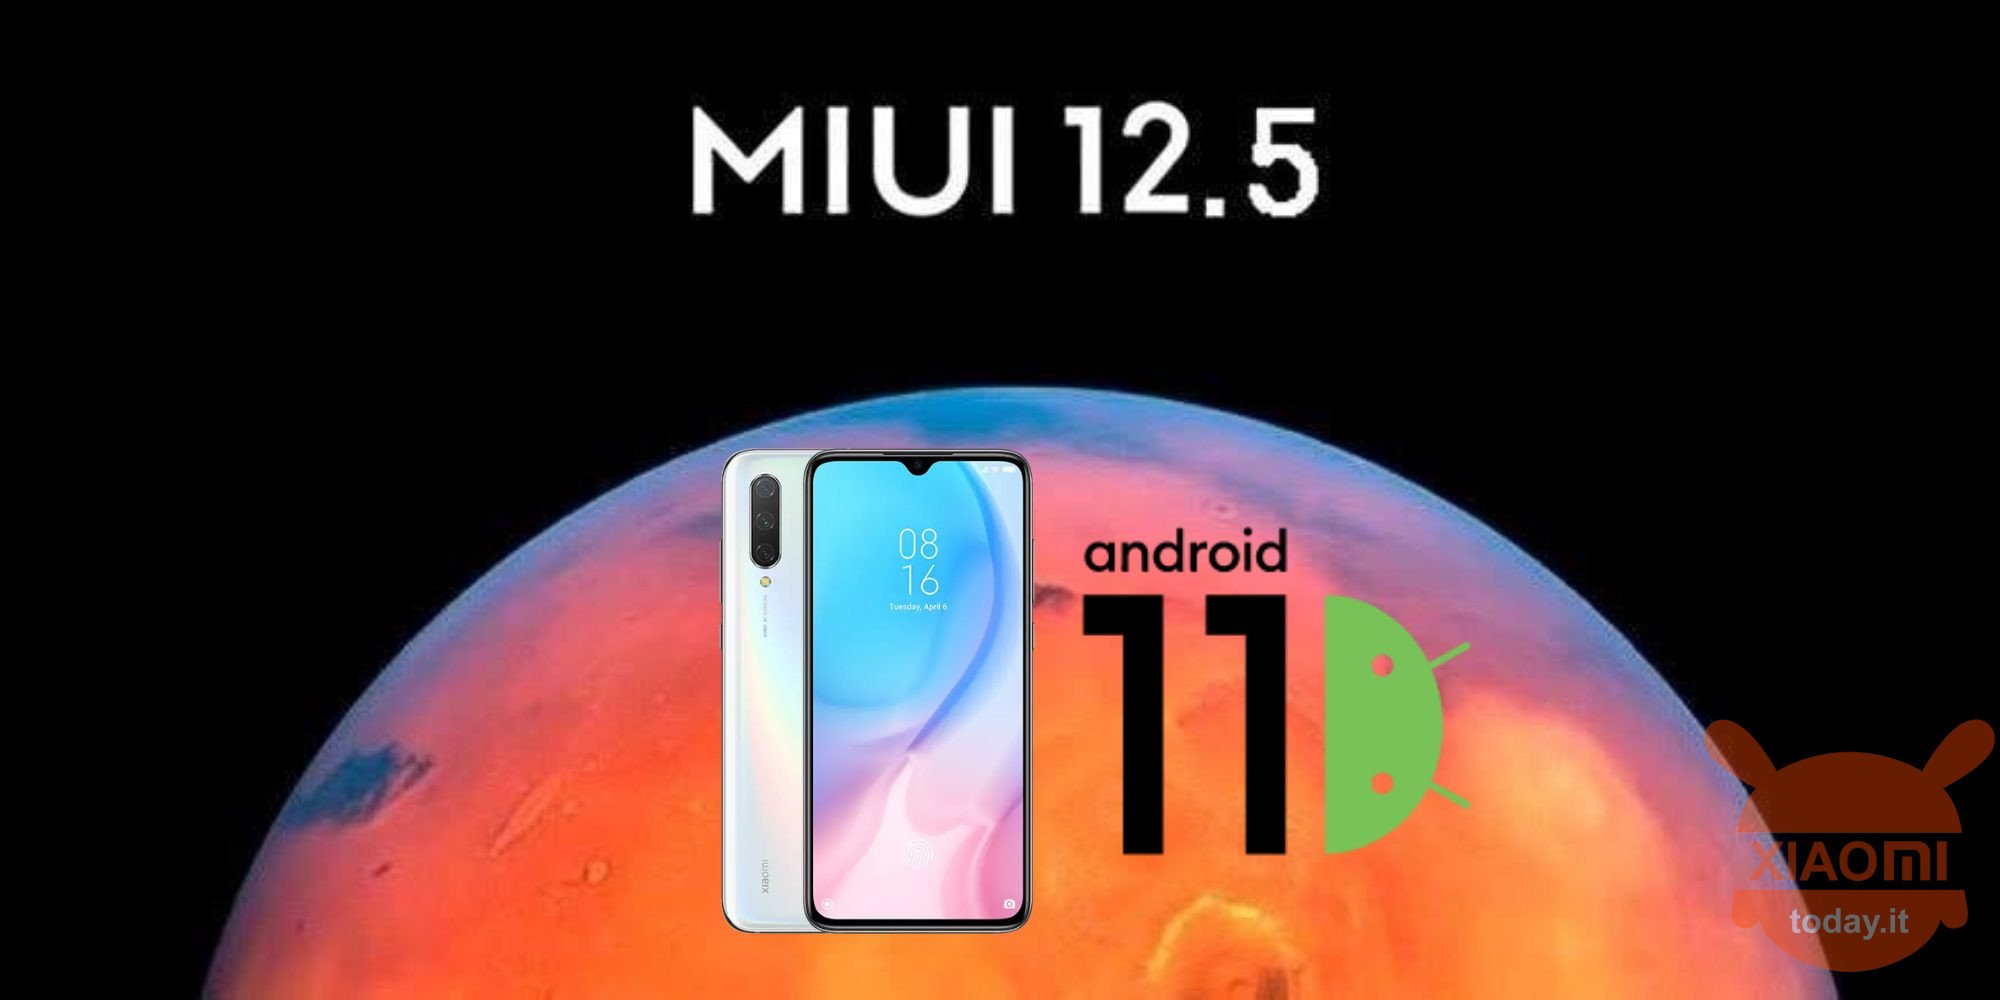 xiaomi mi 9 lite is bijgewerkt naar miui 12.5 en Android 11 italië